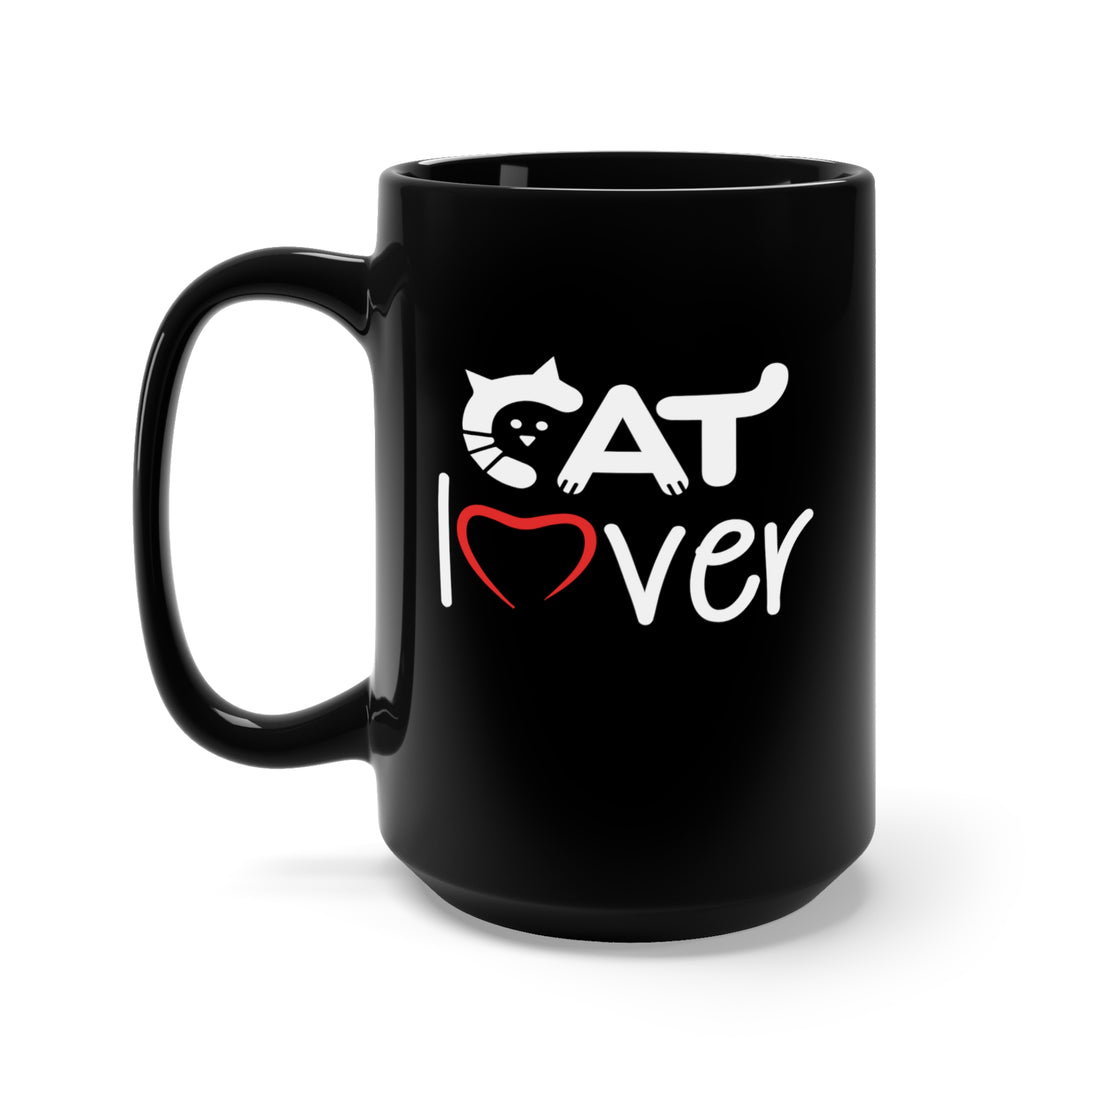 Cat Lover - Large 15oz Black Mug